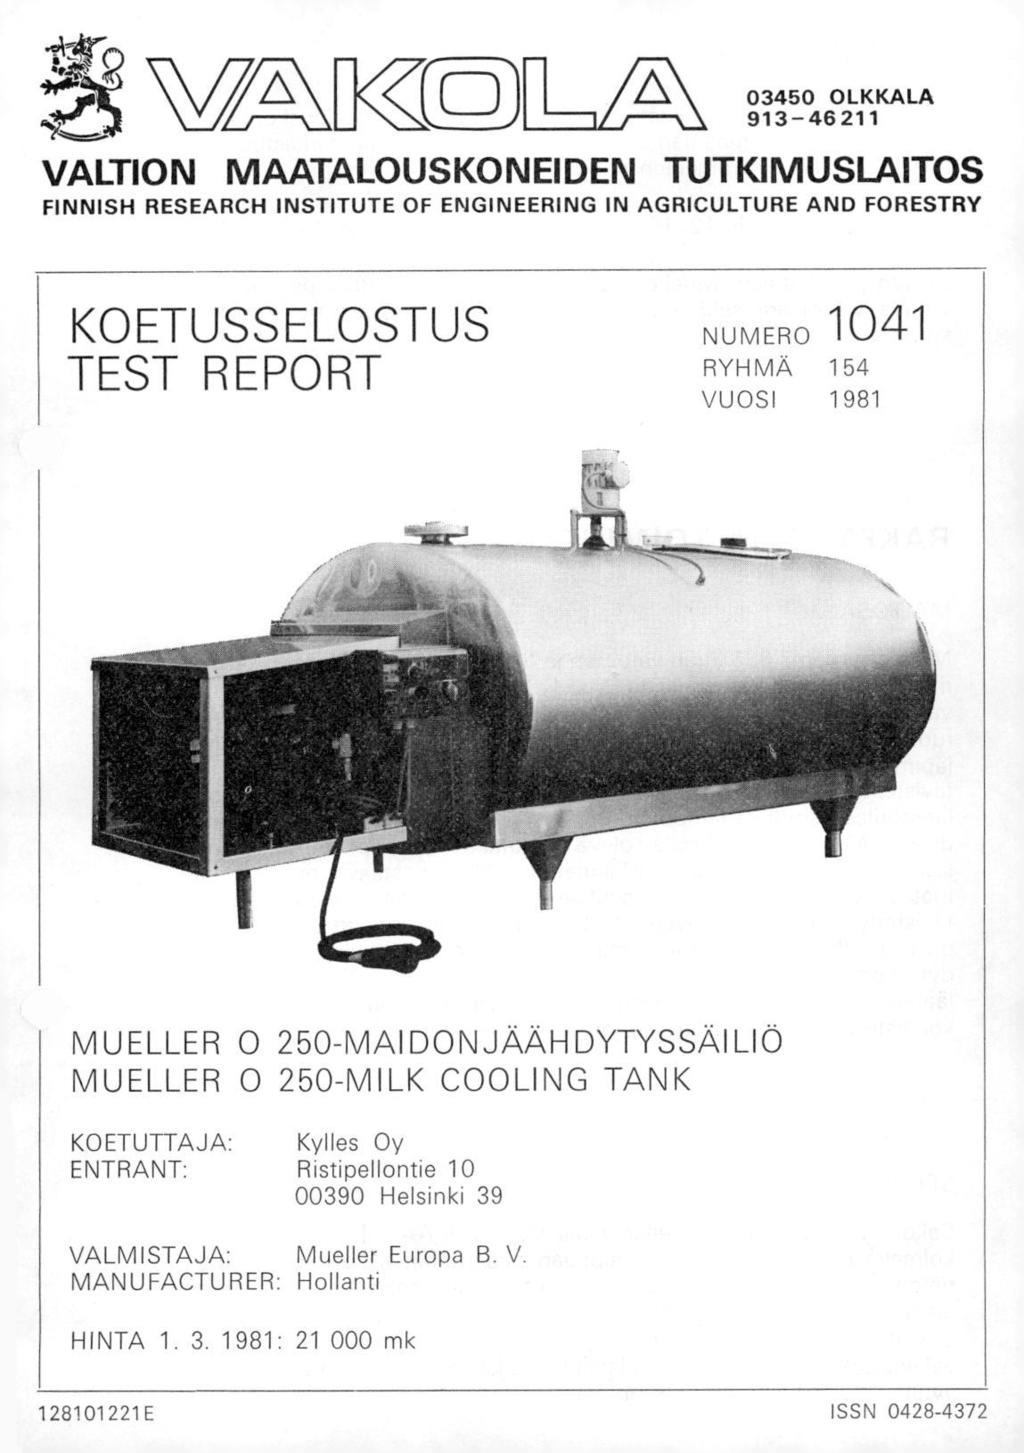 VAM( 03450 OLKKALA 913-46211 VALTION MAATALOUSKONEIDEN TUTKIMUSLAITOS FINNISH RESEARCH INSTITUTE OF ENGINEERING IN AGRICULTURE AND FORESTRY KOETUSSELOSTUS TEST REPORT NUMERO 1041 RYHMÄ 154 VUOSI 1981